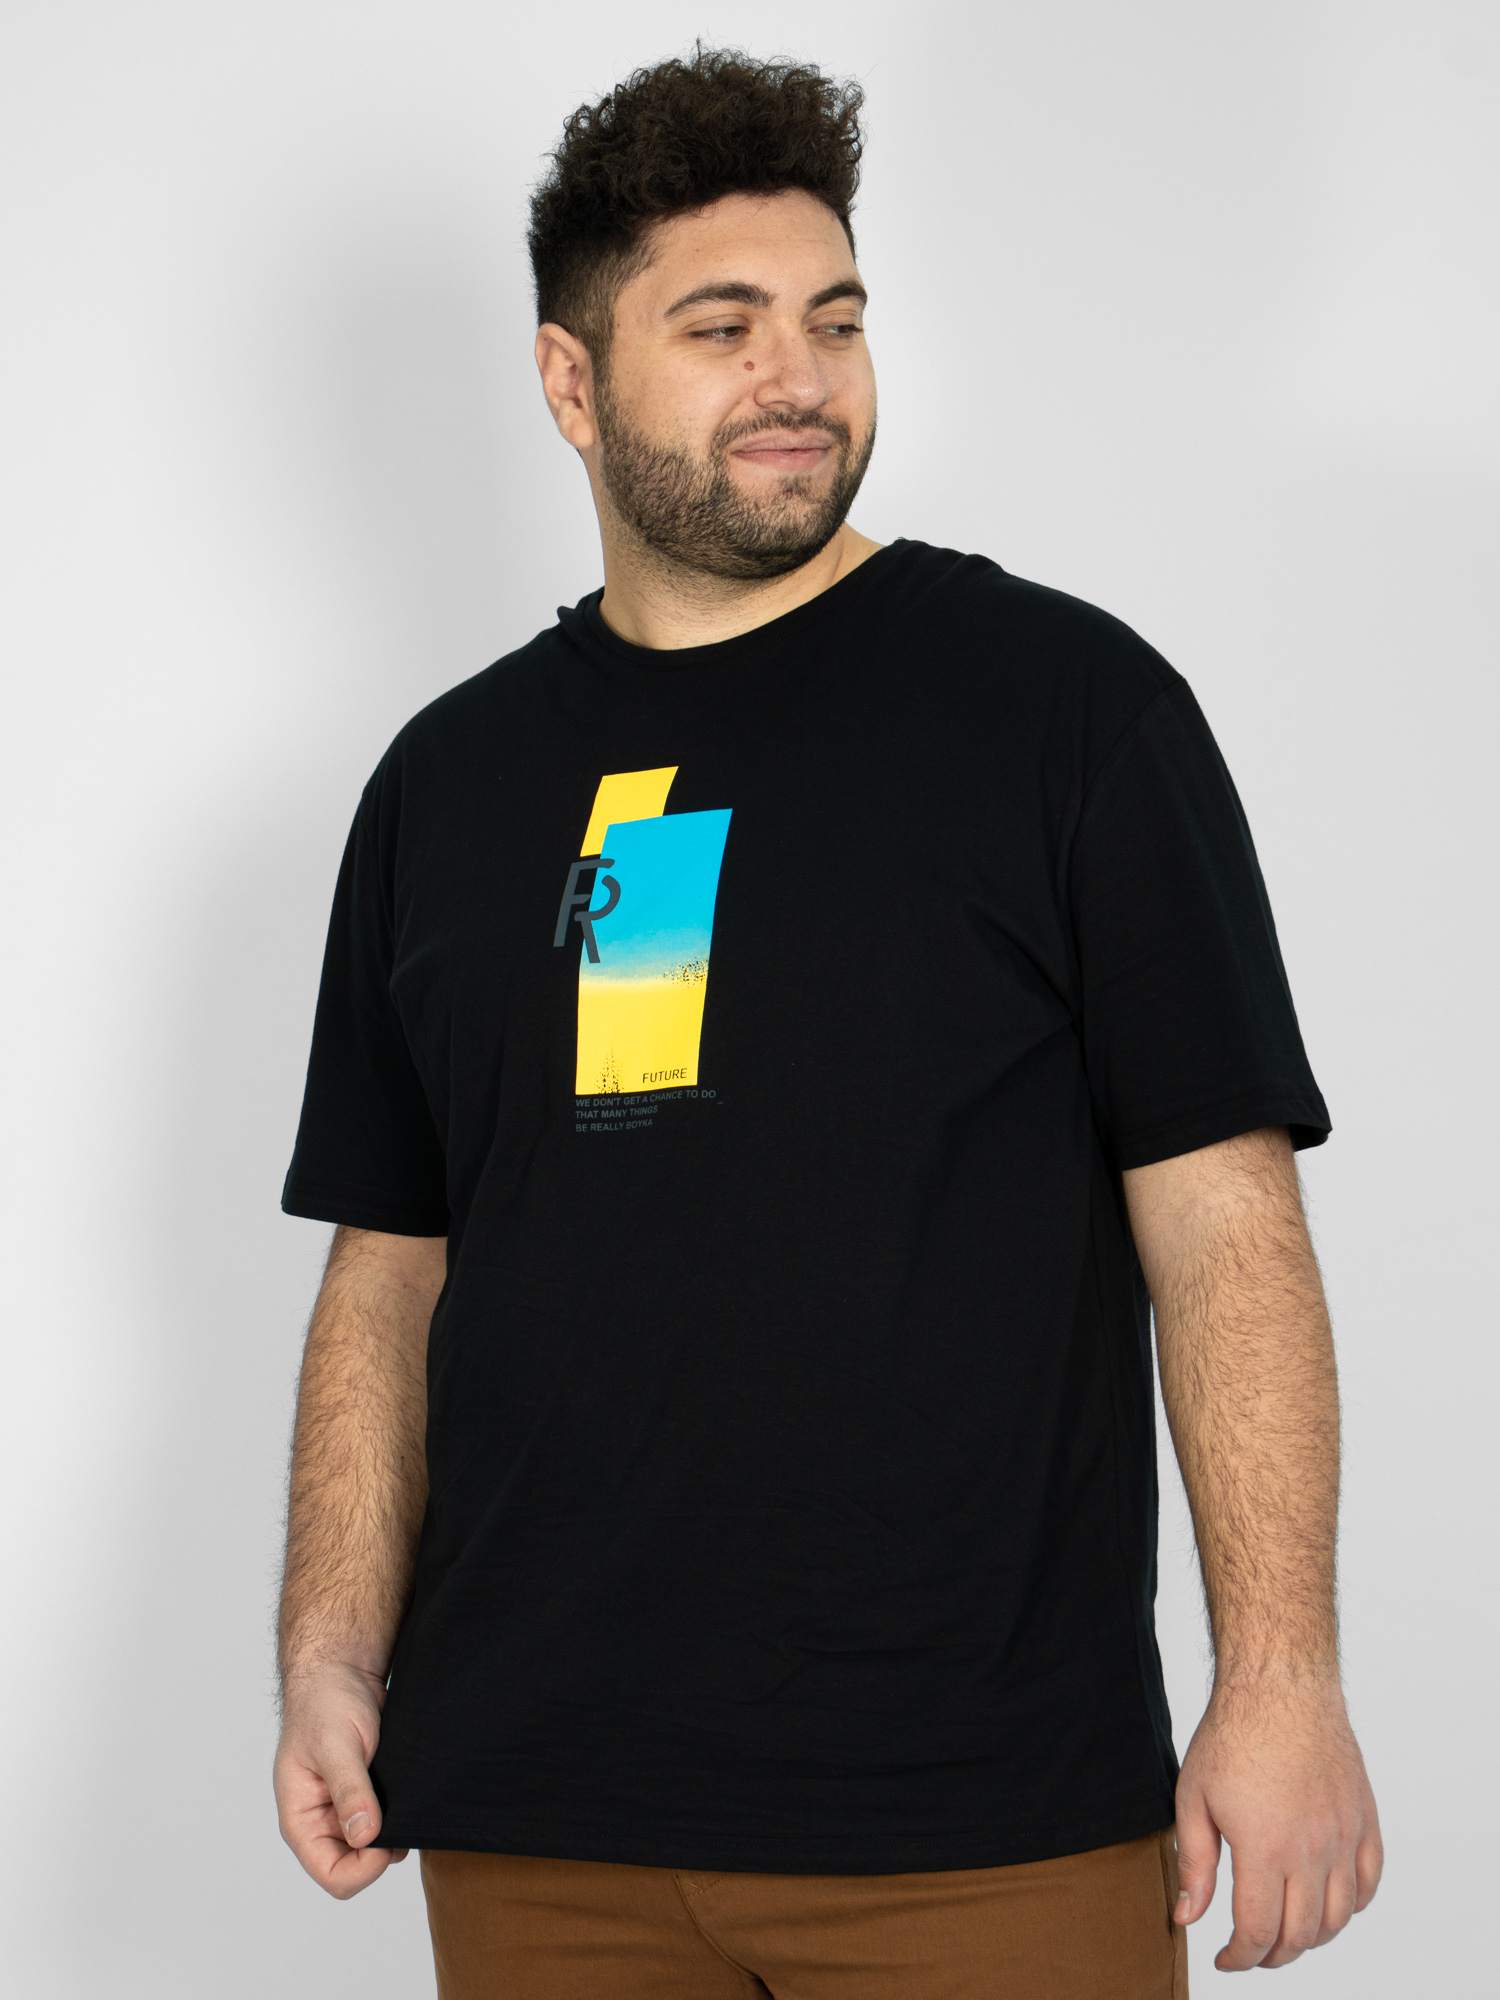 Ανδρική Μπλούζα T-shirt ''FUTURE'' Μεγάλο Μέγεθος - Μαύρο